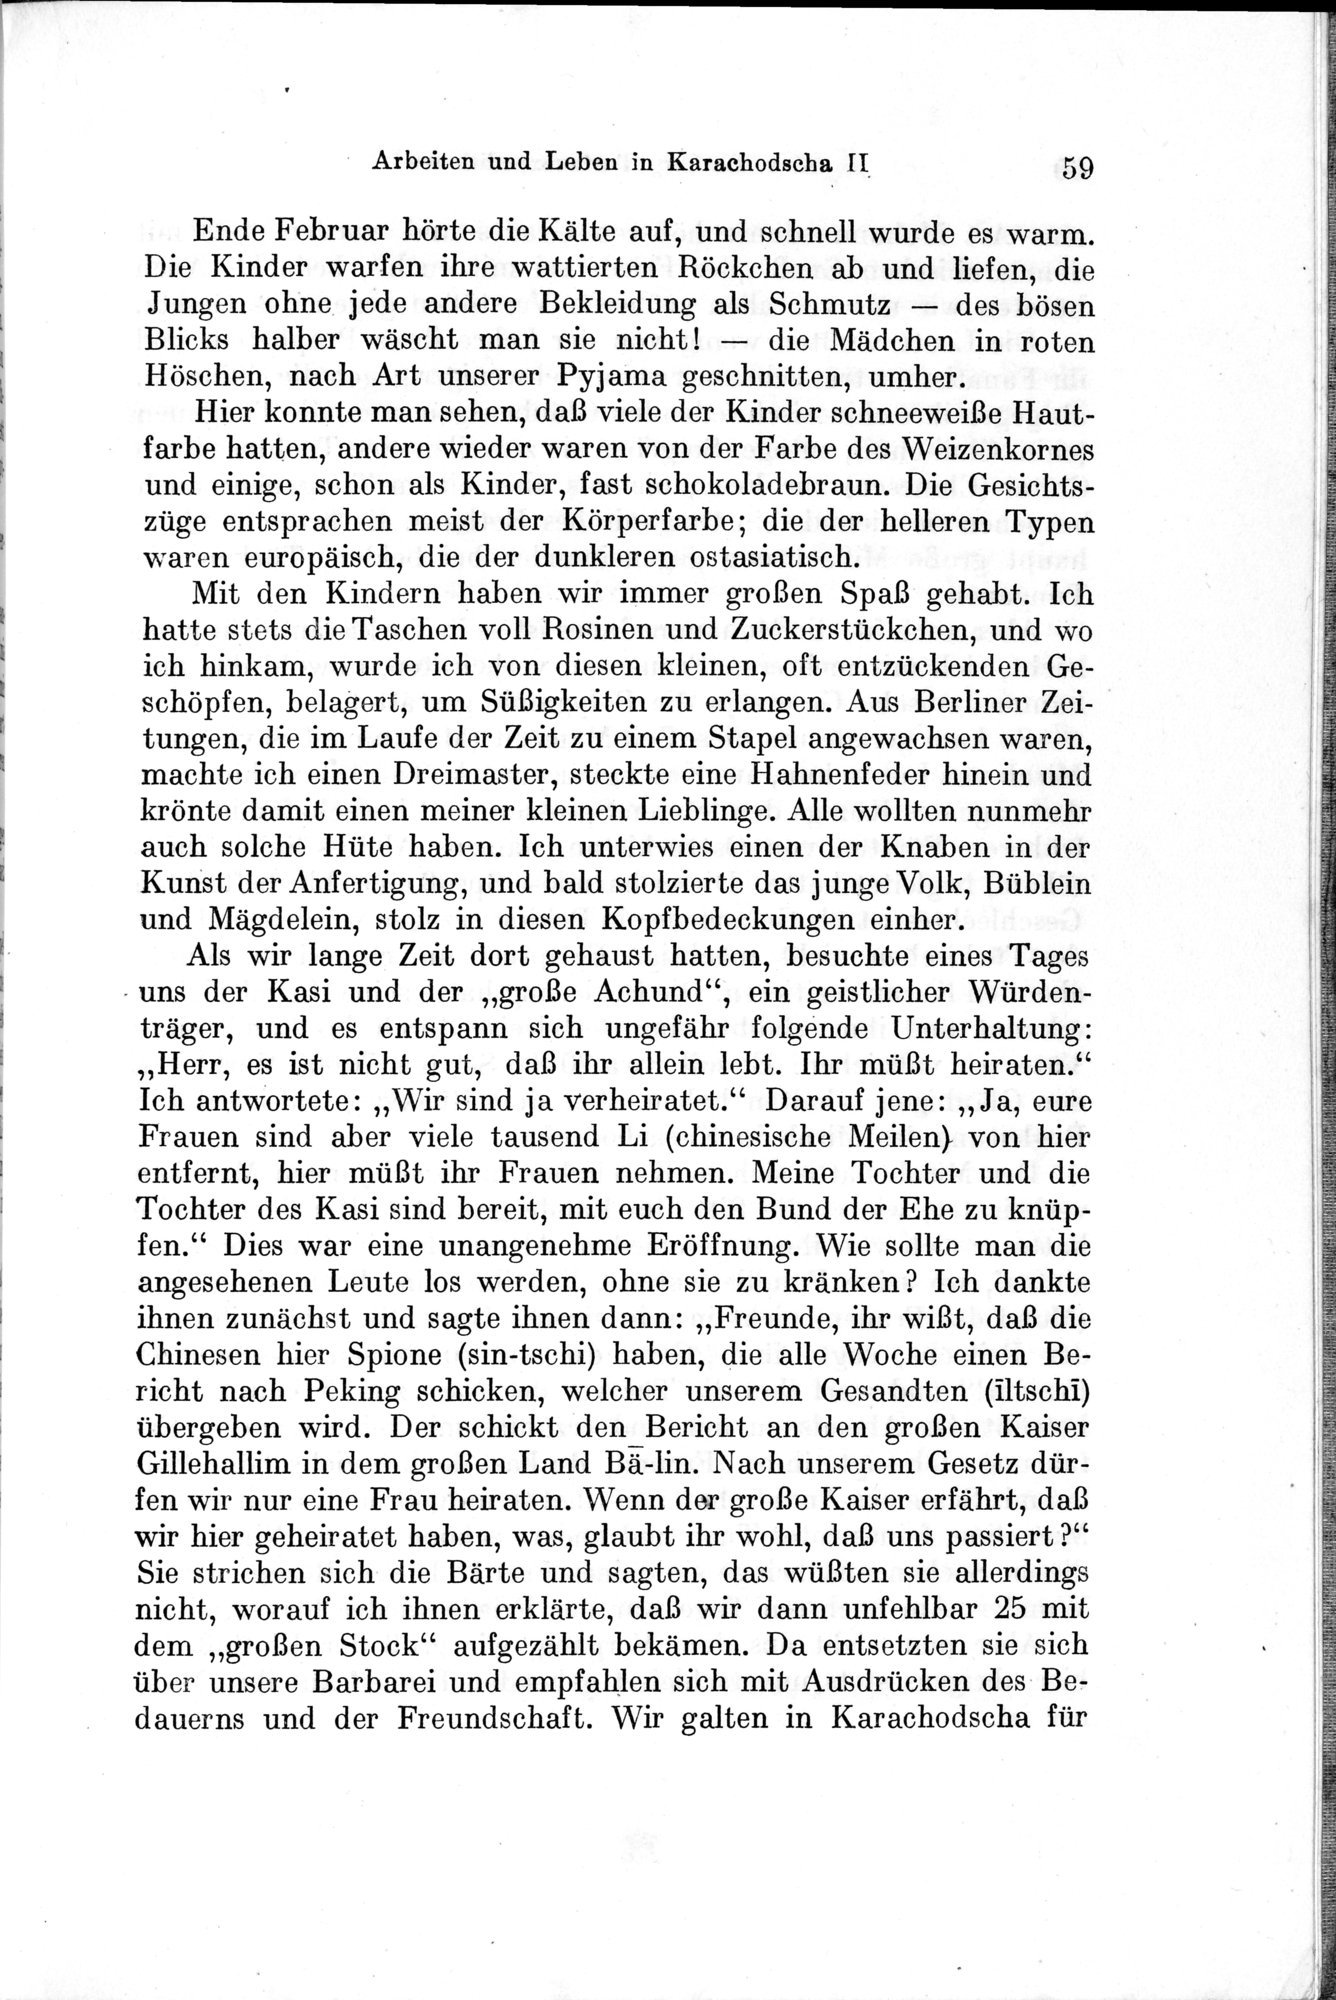 Auf Hellas Spuren in Ostturkistan : vol.1 / Page 91 (Grayscale High Resolution Image)